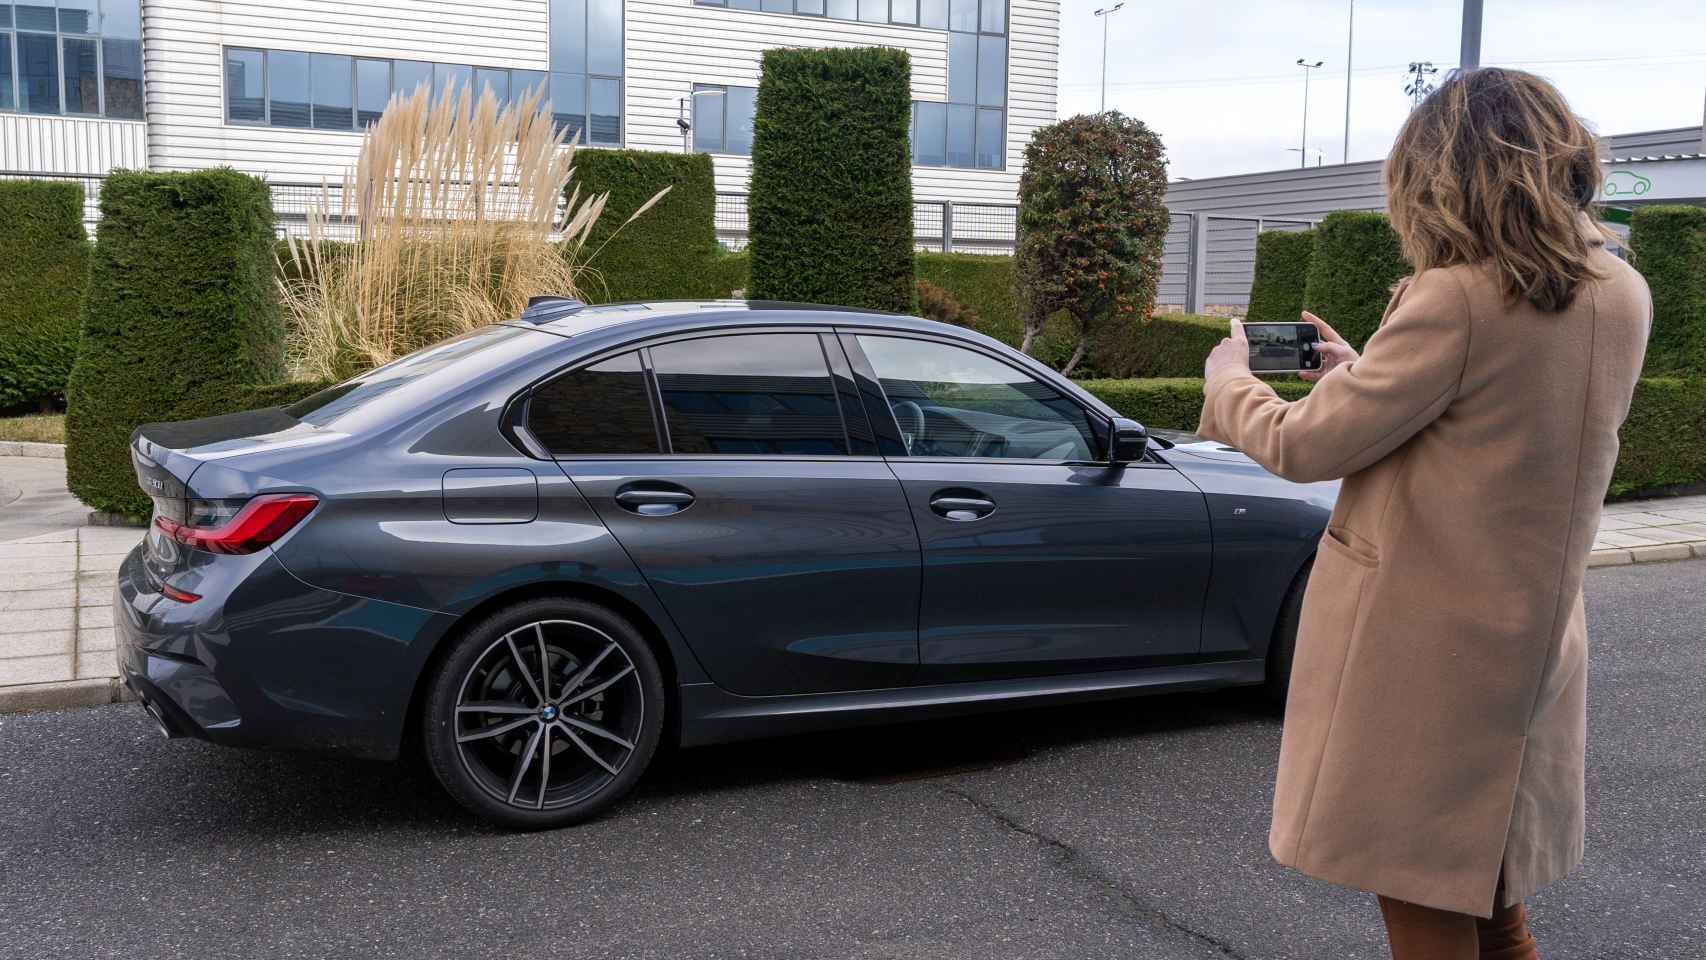 Una mujer toma fotos de un coche con su teléfono móvil.